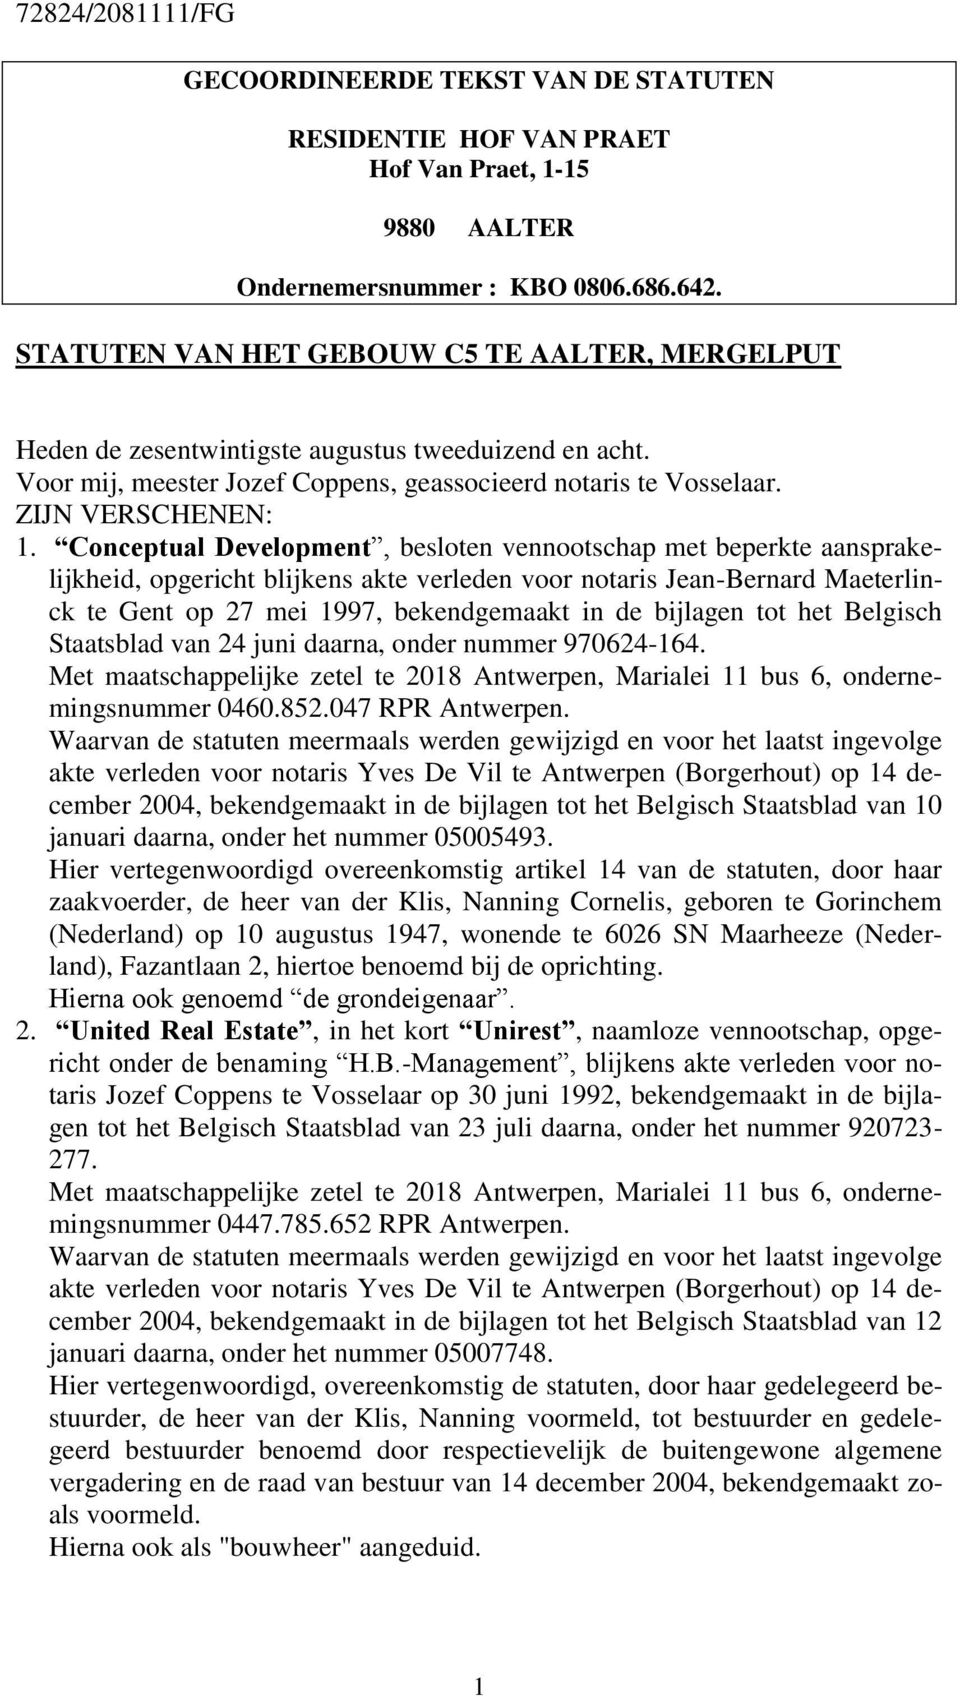 Conceptual Development, besloten vennootschap met beperkte aansprakelijkheid, opgericht blijkens akte verleden voor notaris Jean-Bernard Maeterlinck te Gent op 27 mei 1997, bekendgemaakt in de